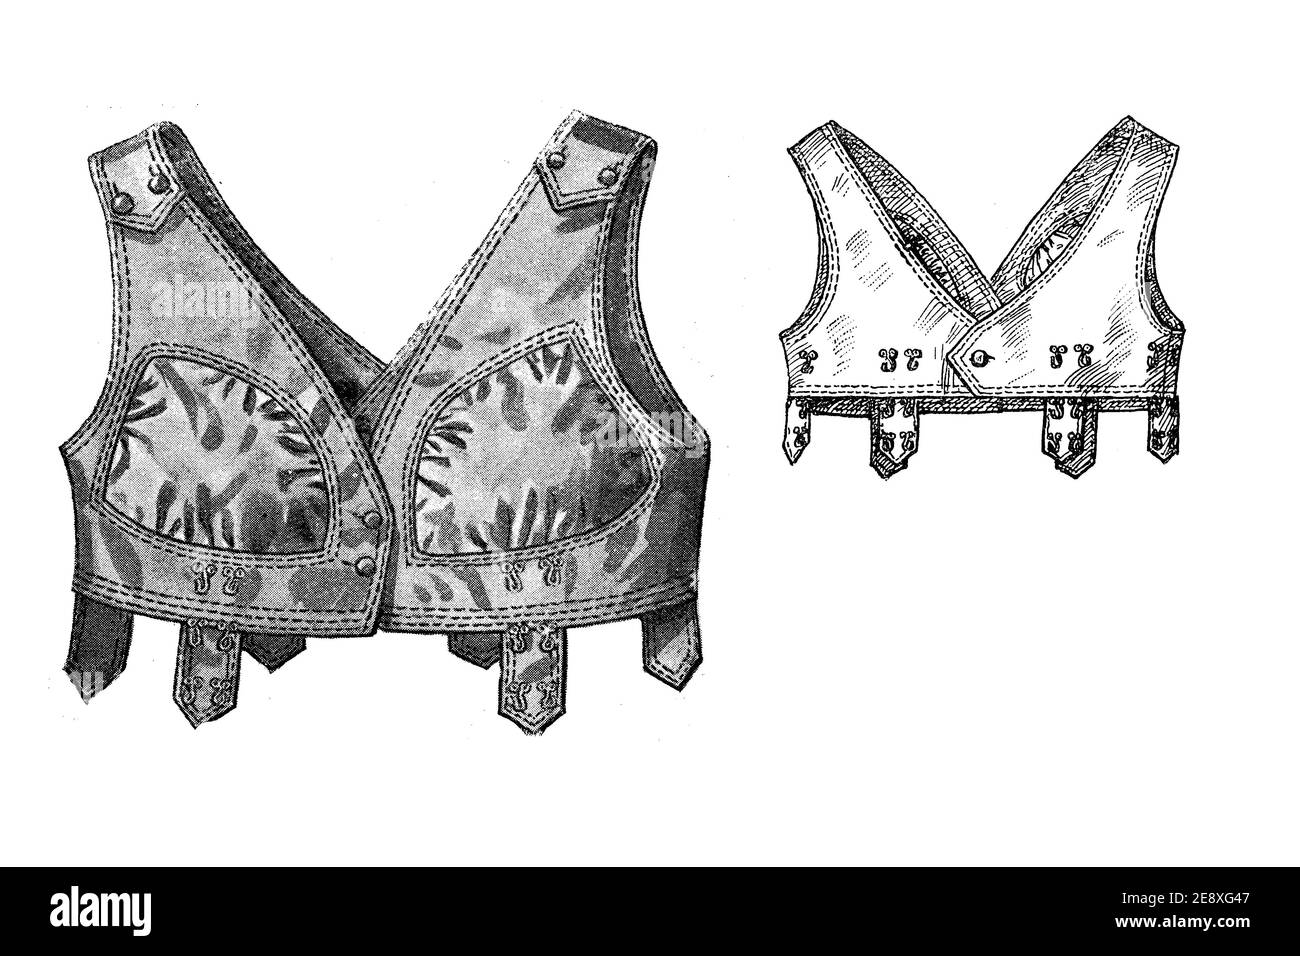 Ladies Fashion 1908, Dress Reform Brassiere: I corsetti allacciati sono stati fatti cadere a favore di più confortable intimo Foto Stock